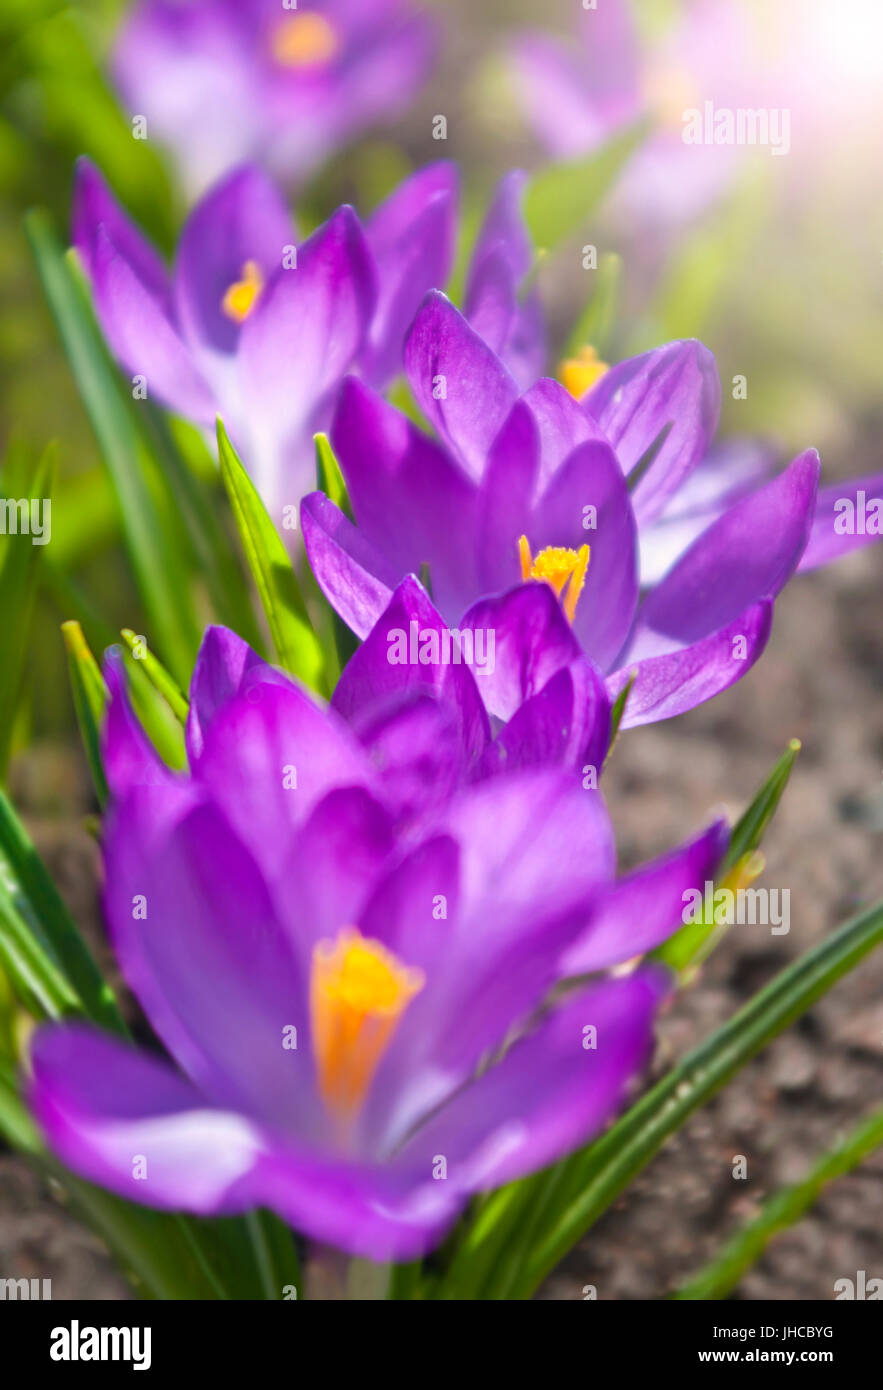 Makroaufnahme der Gruppe von lila Krokus Blumen auf sonnigen Tag mit geringen Schärfentiefe aufgenommen Stockfoto